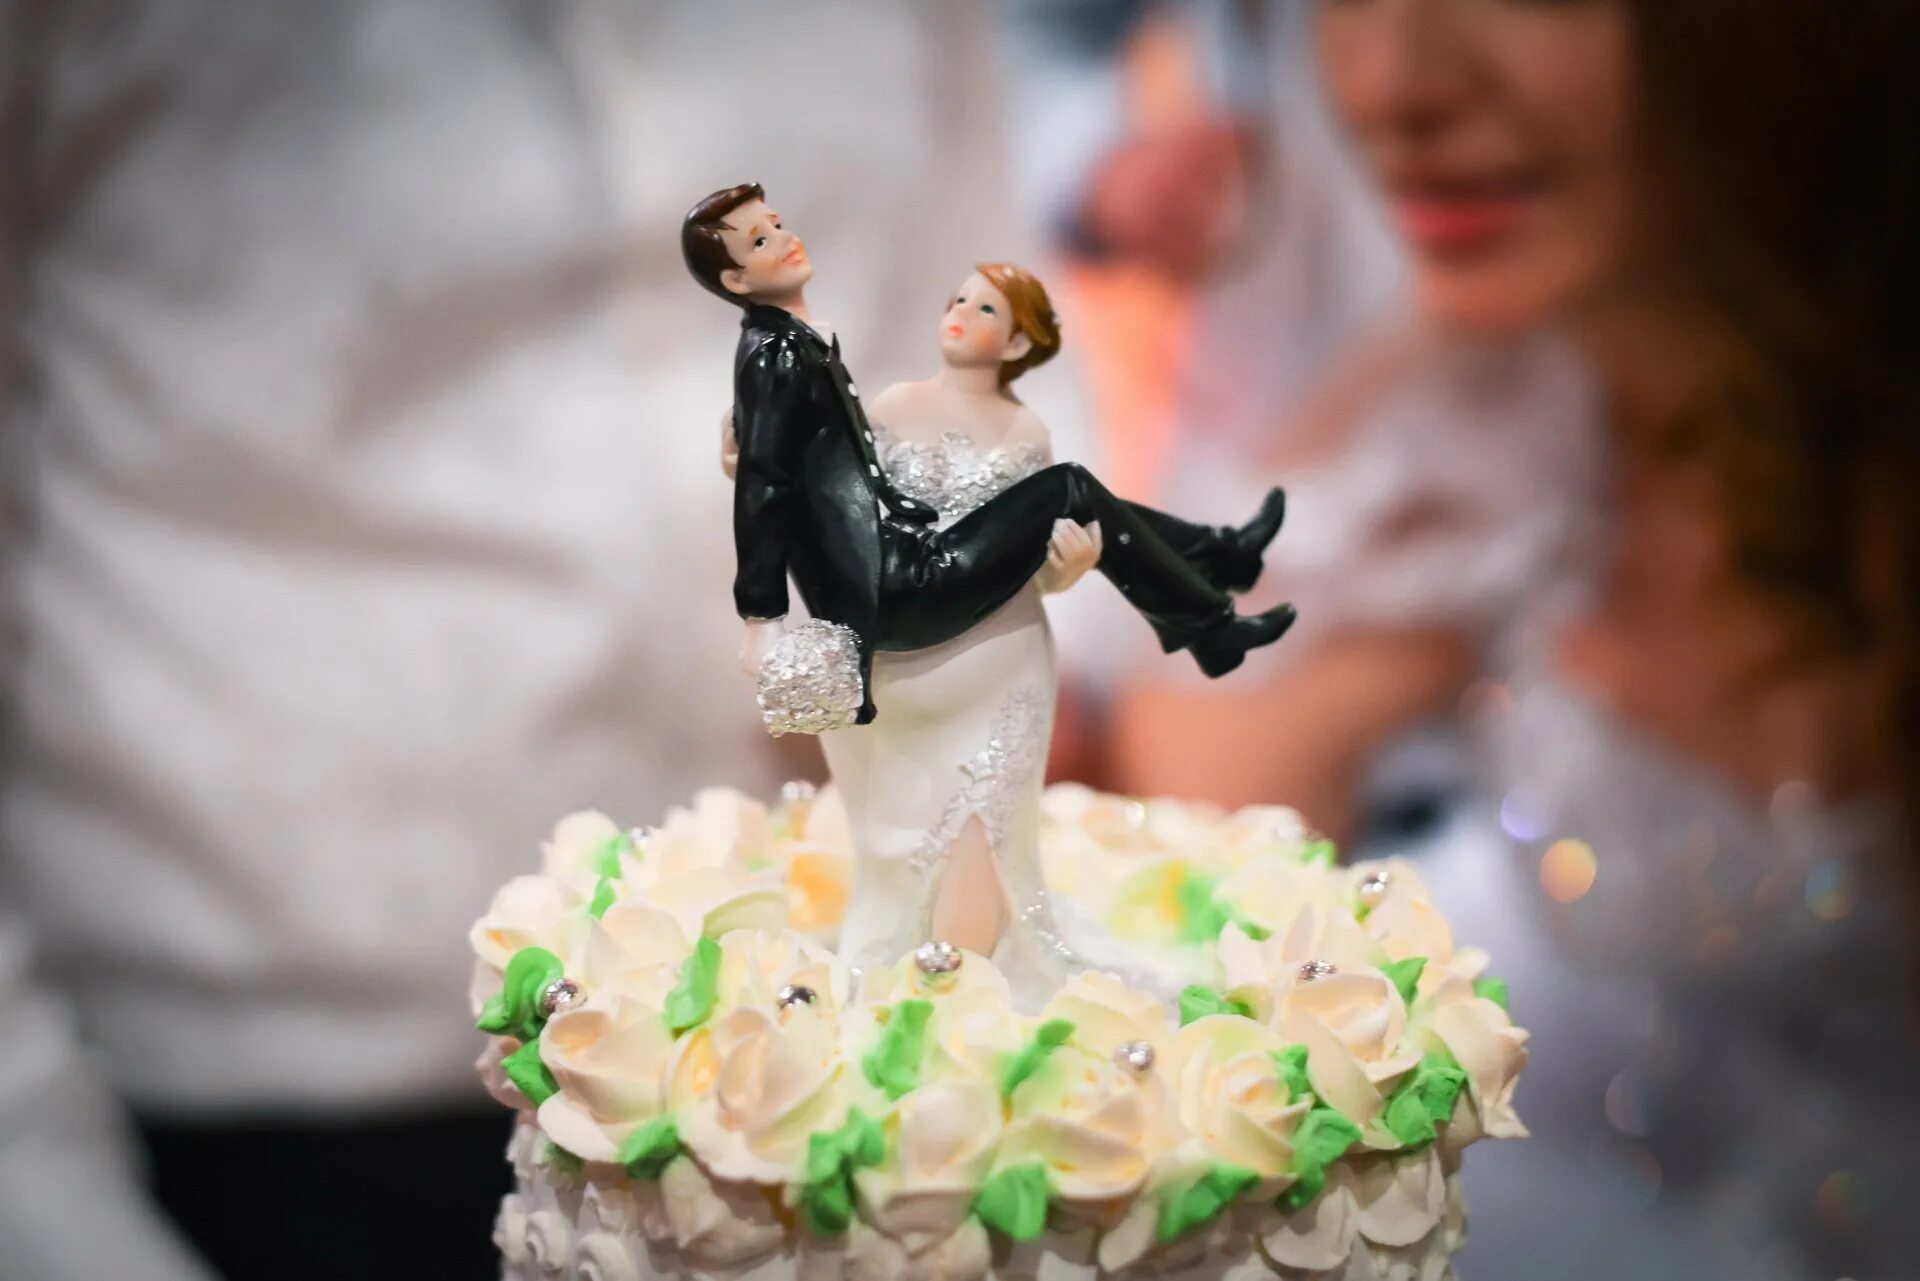 Жених невеста на торт. Свадебный торт!. Фигурки на свадебный торт. Фигурки жениха и невесты на торт. Свадебный торт с фигурками жениха и невесты.